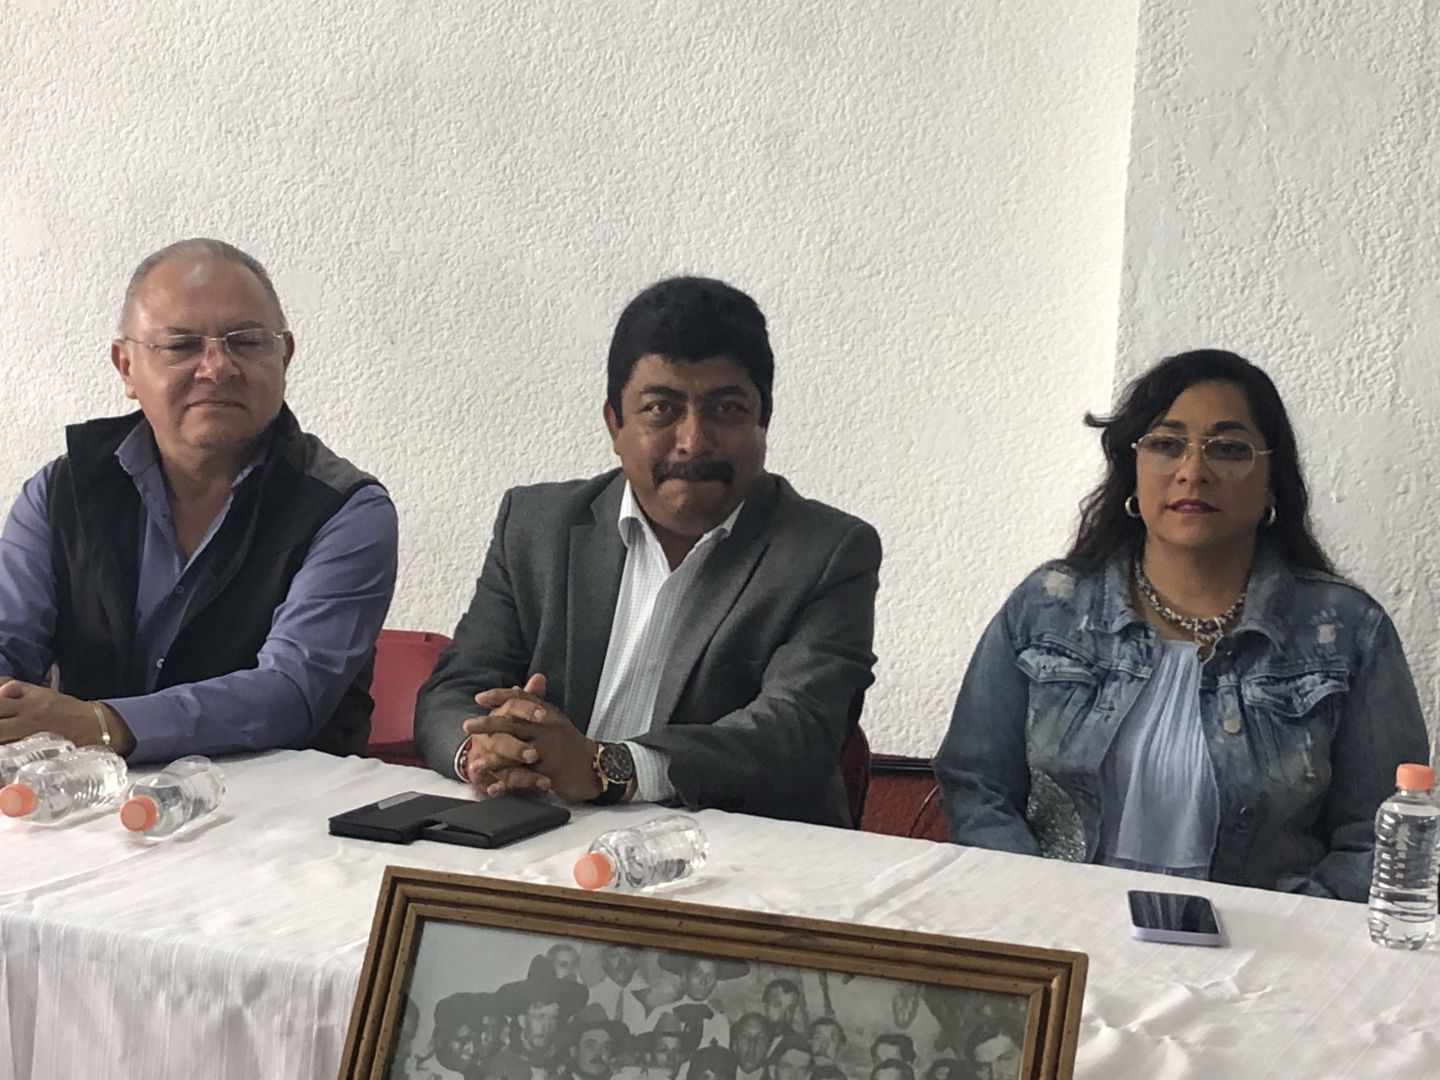 Ahorran el Viaje a Toluca Ejidatarios Podrán Realizar Trámites en Texcoco 